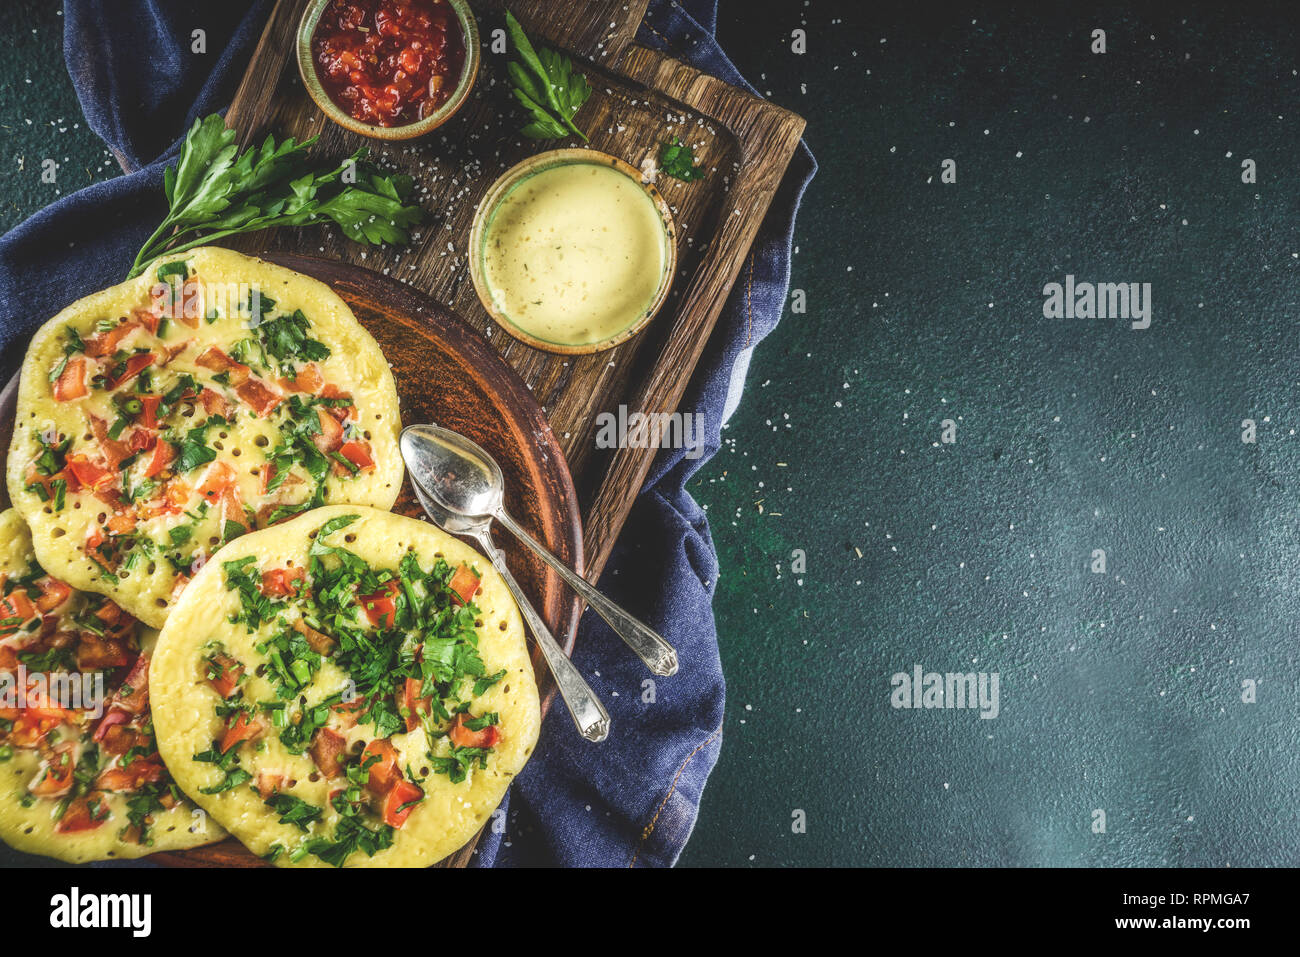 Traditionelles indisches Essen Rezepte, Hafer oder Uttapam Grieß Pfannkuchen  mit frischem Gemüse und Kräutern, dunkelblauen Hintergrund Kopie Raum,  Ansicht von oben Stockfotografie - Alamy